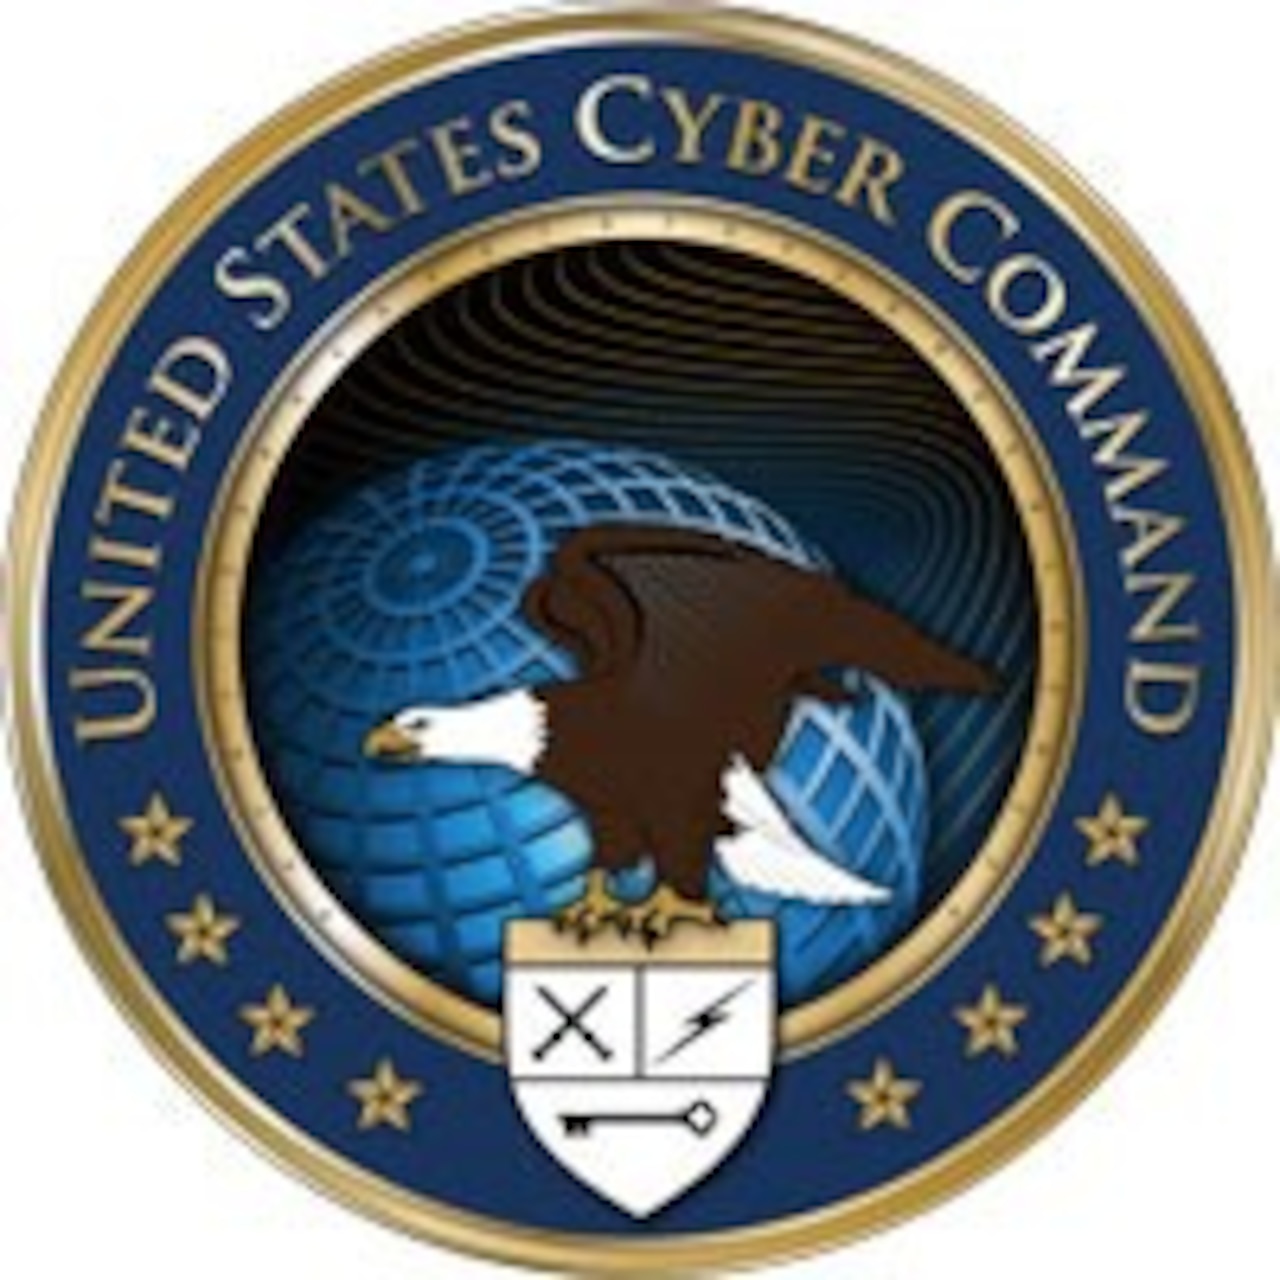 U.S. Cyber Command emblem.